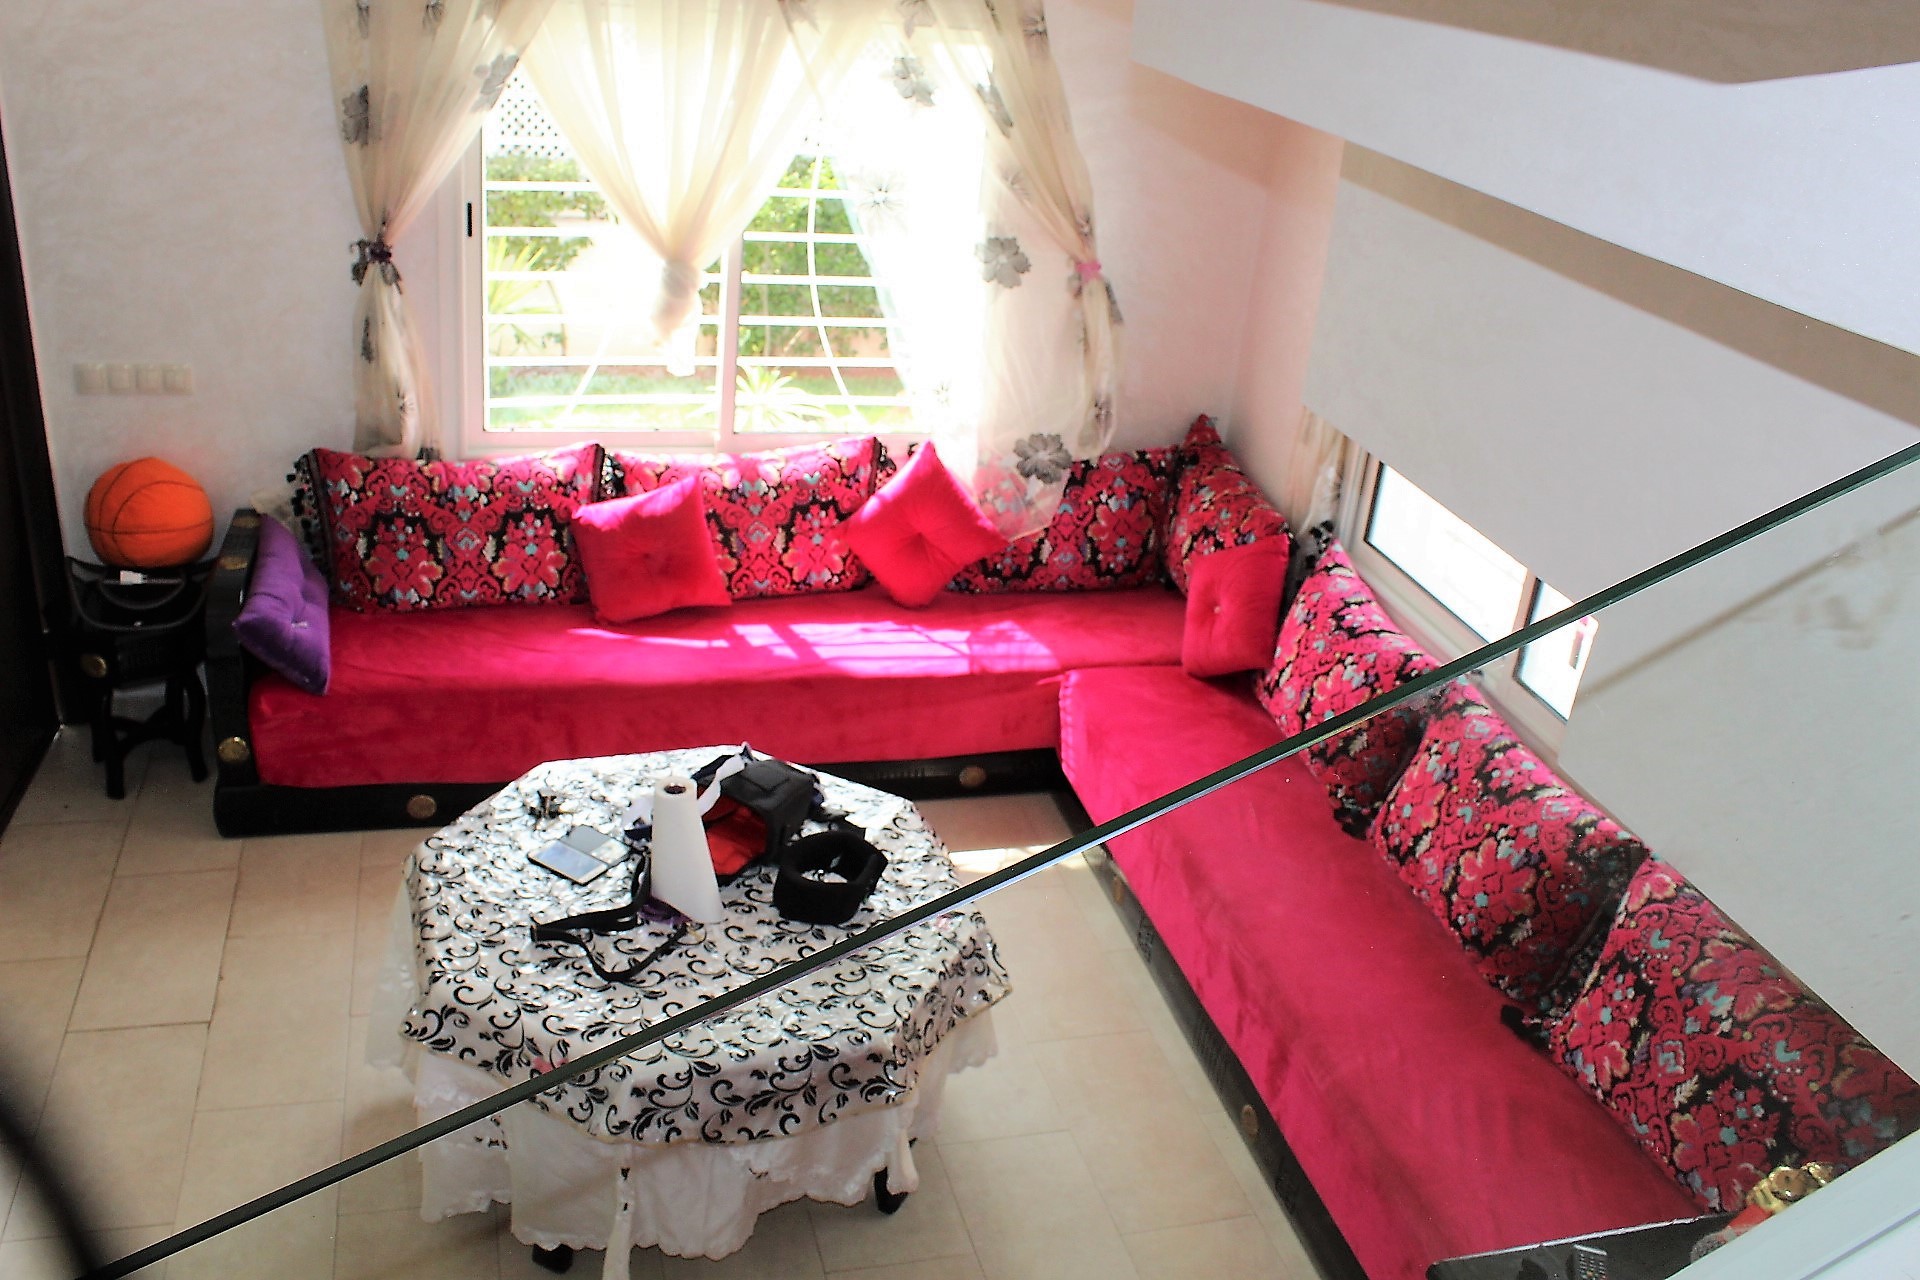 Maroc, Dar Bouazza, à vendre villa entierement rénovée de 215 m² (habitable)  sur un terrain de 340 m² dans résidence gardée et fermée